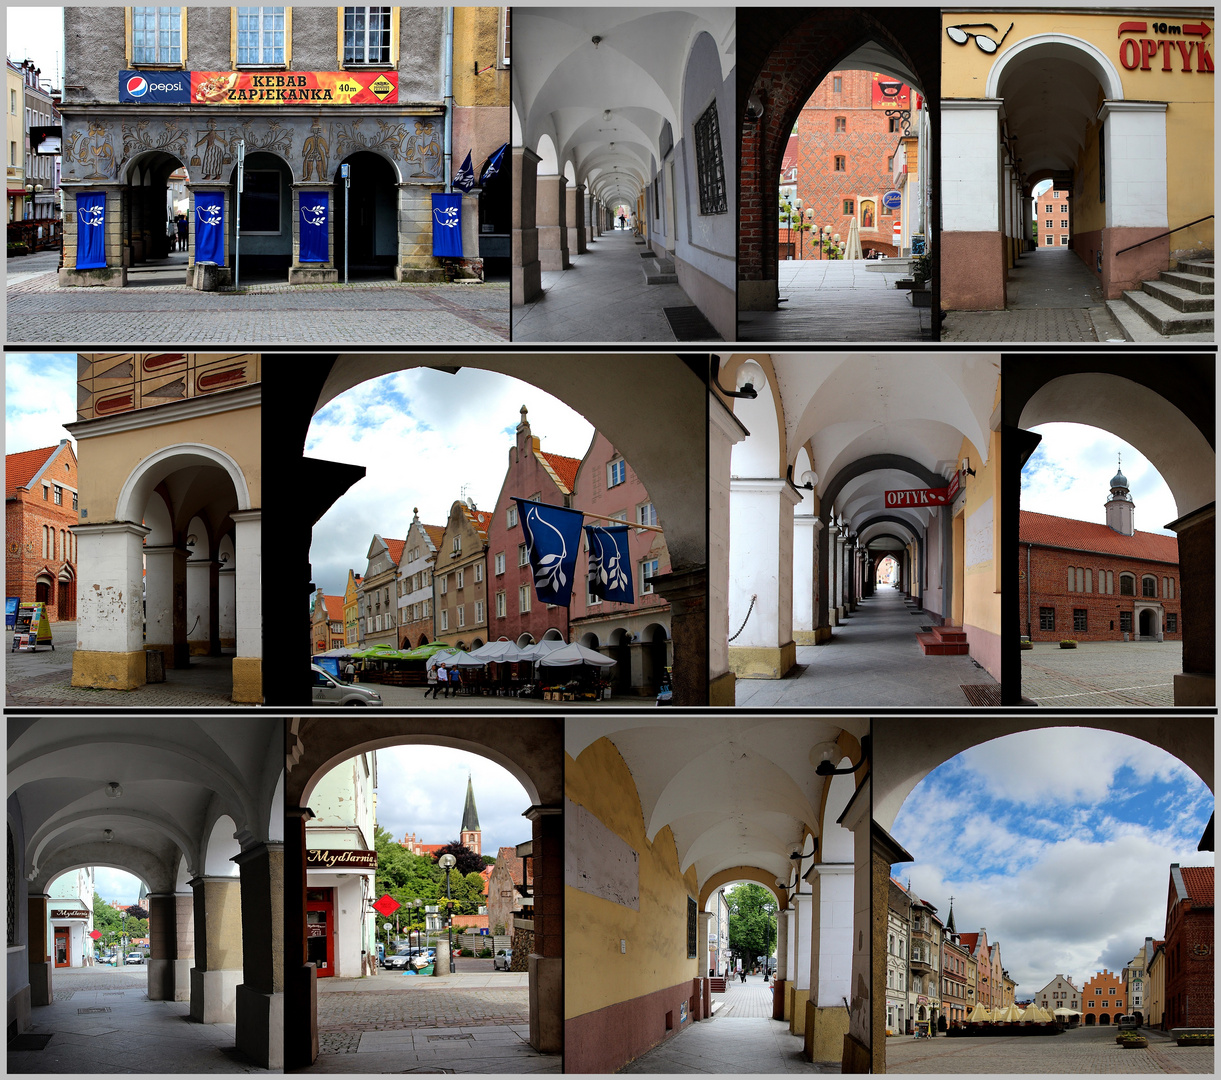 Durchblicke an den Laubengängen der Markthäuser in Olsztyn ( Allenstein)